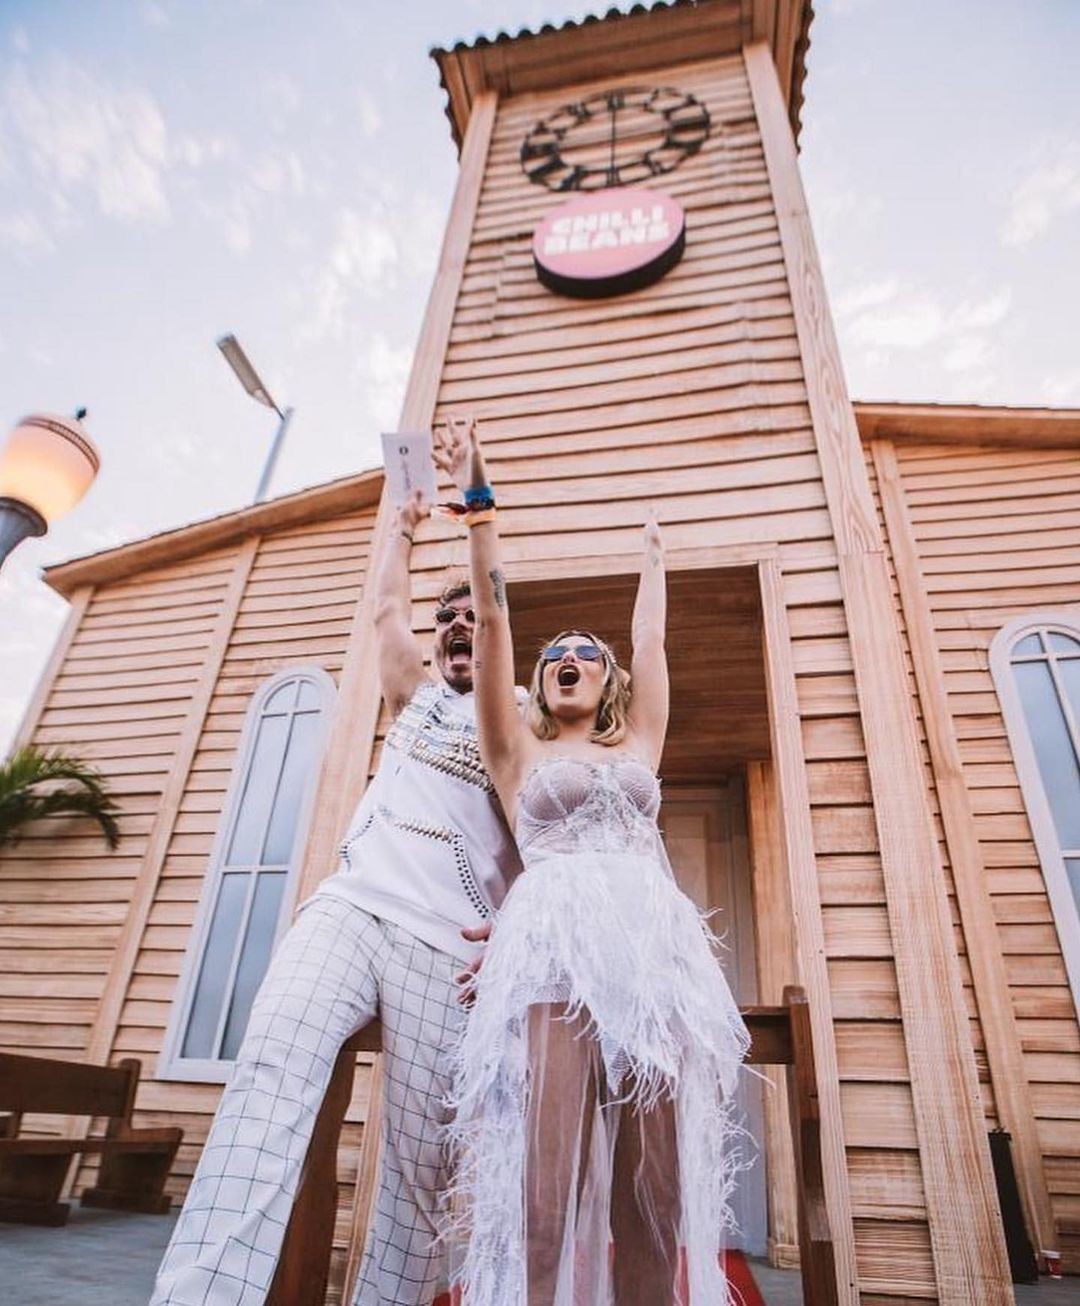 No Rock in Rio, os dois fizeram uma cerimônia de "casamento" — Foto: Reprodução/Instagram